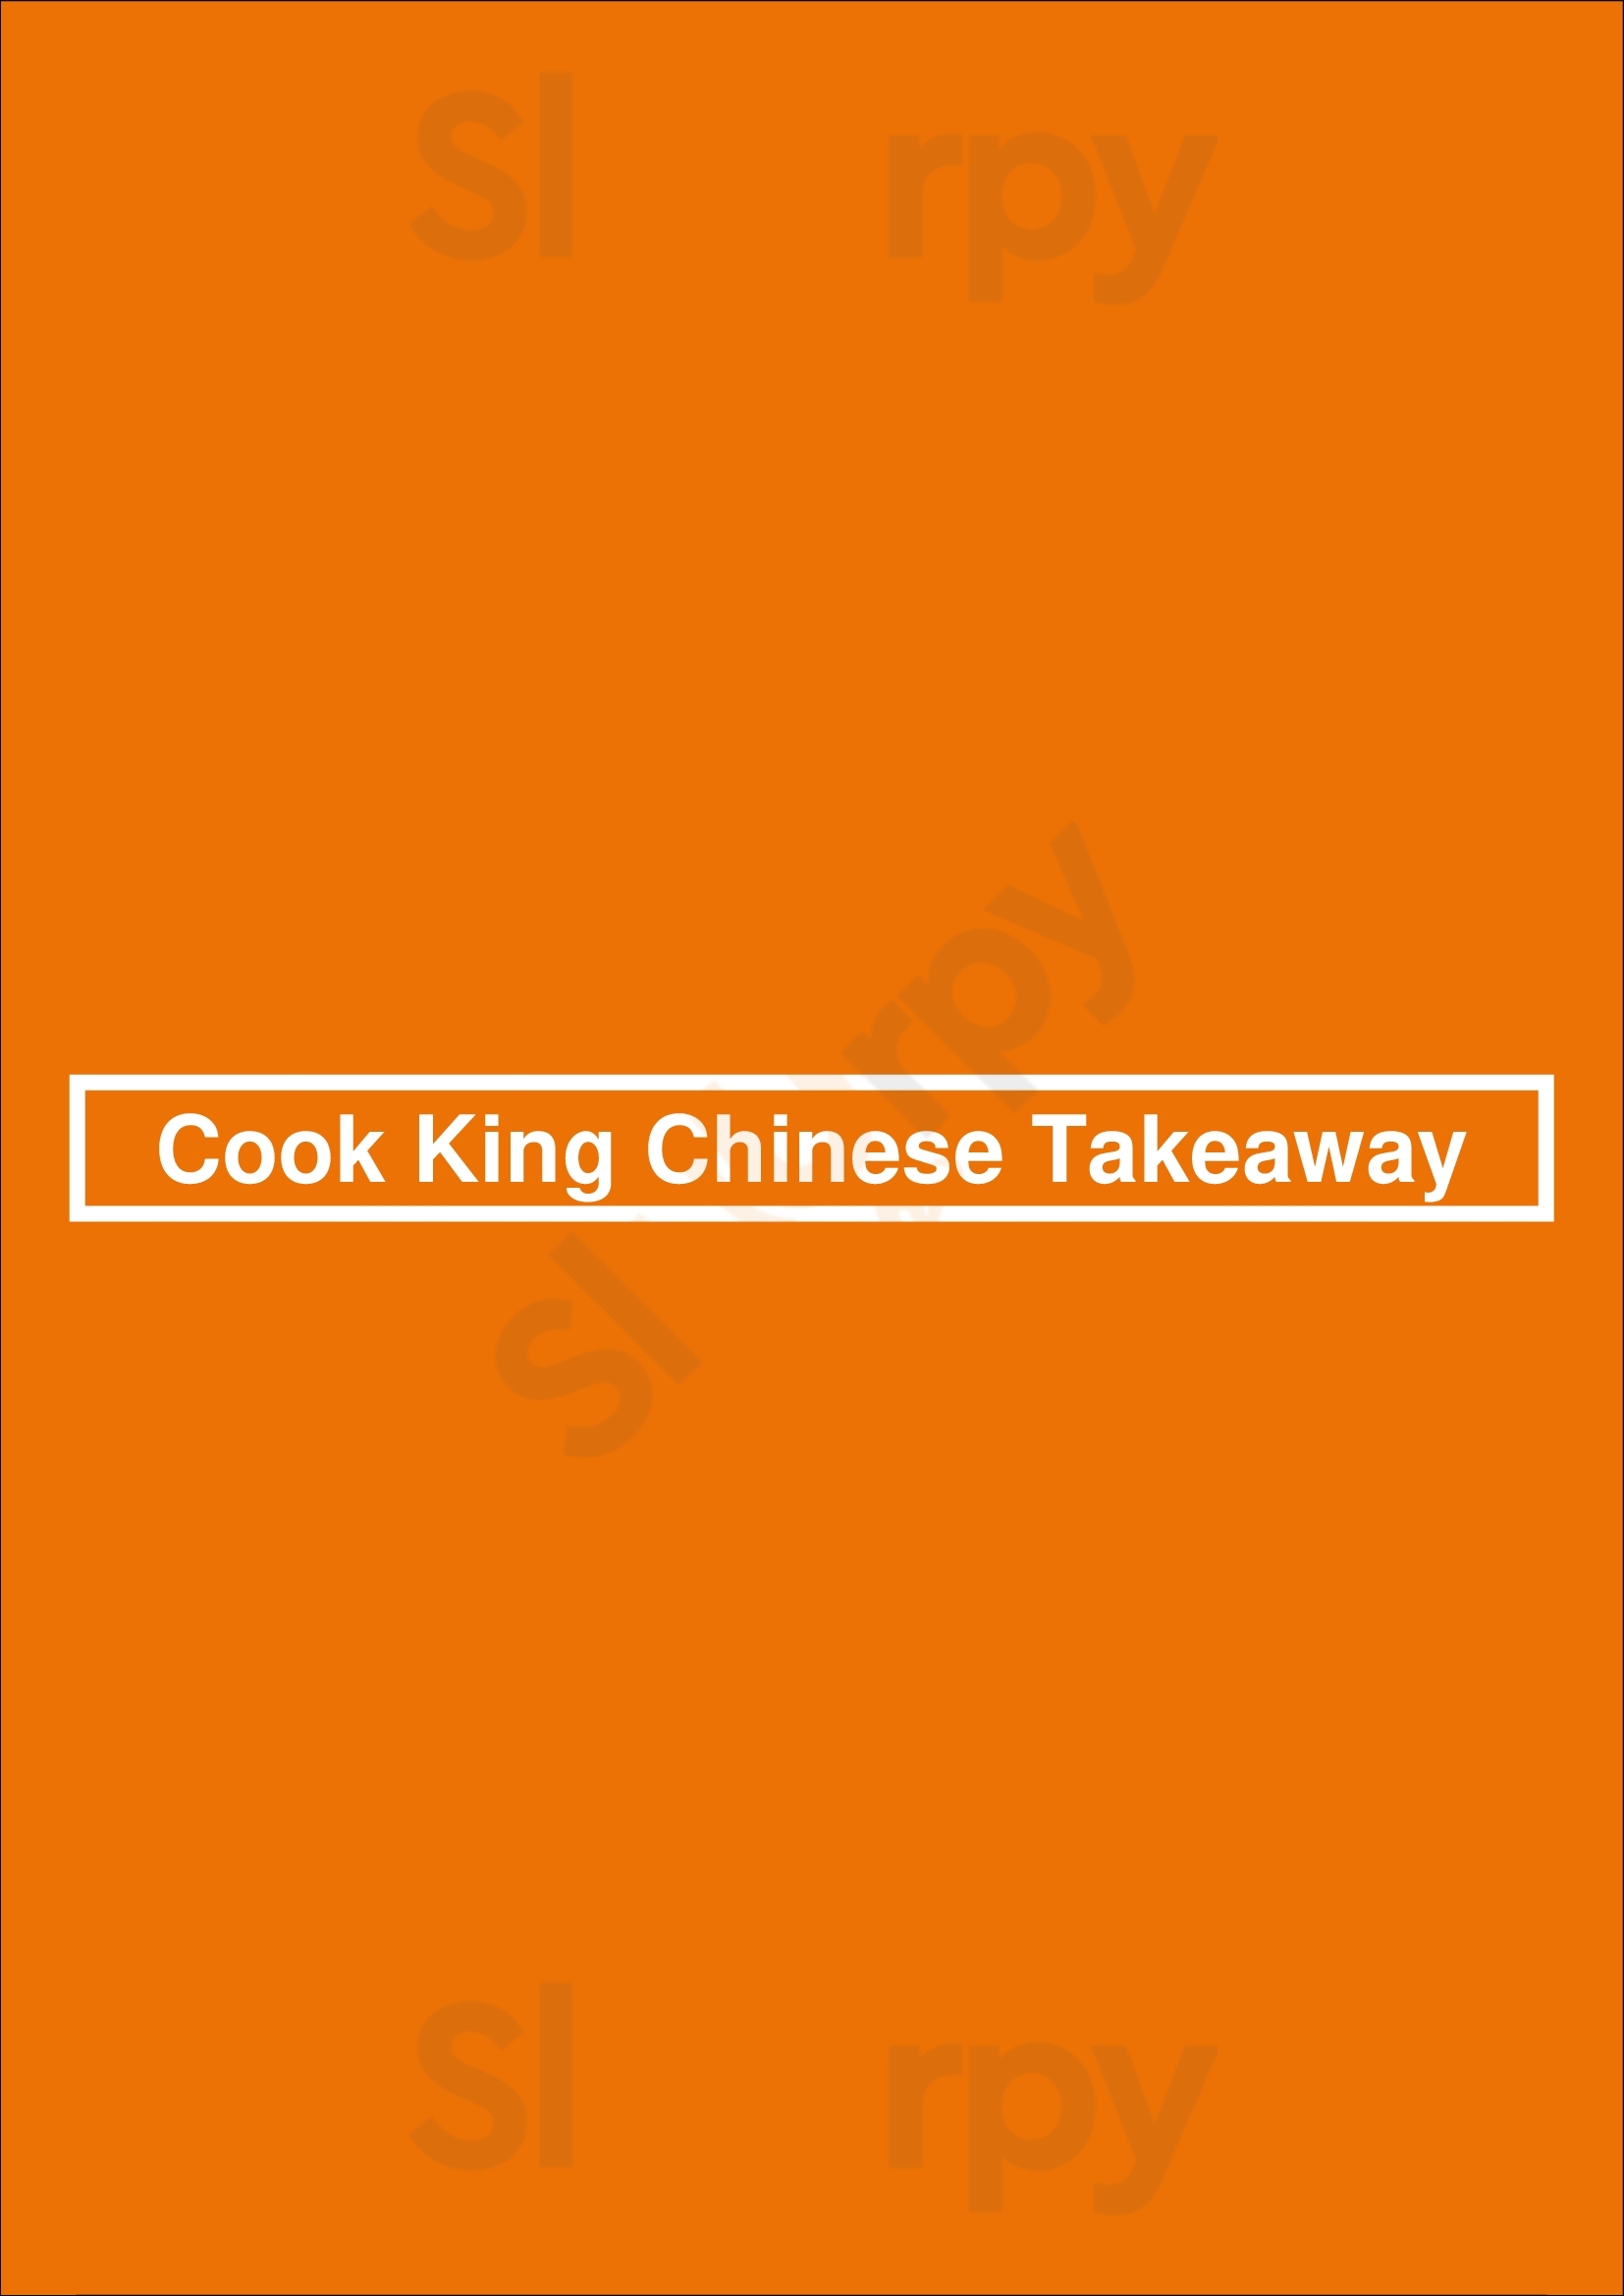 Cook King Chinese Takeaway Birmingham Menu - 1